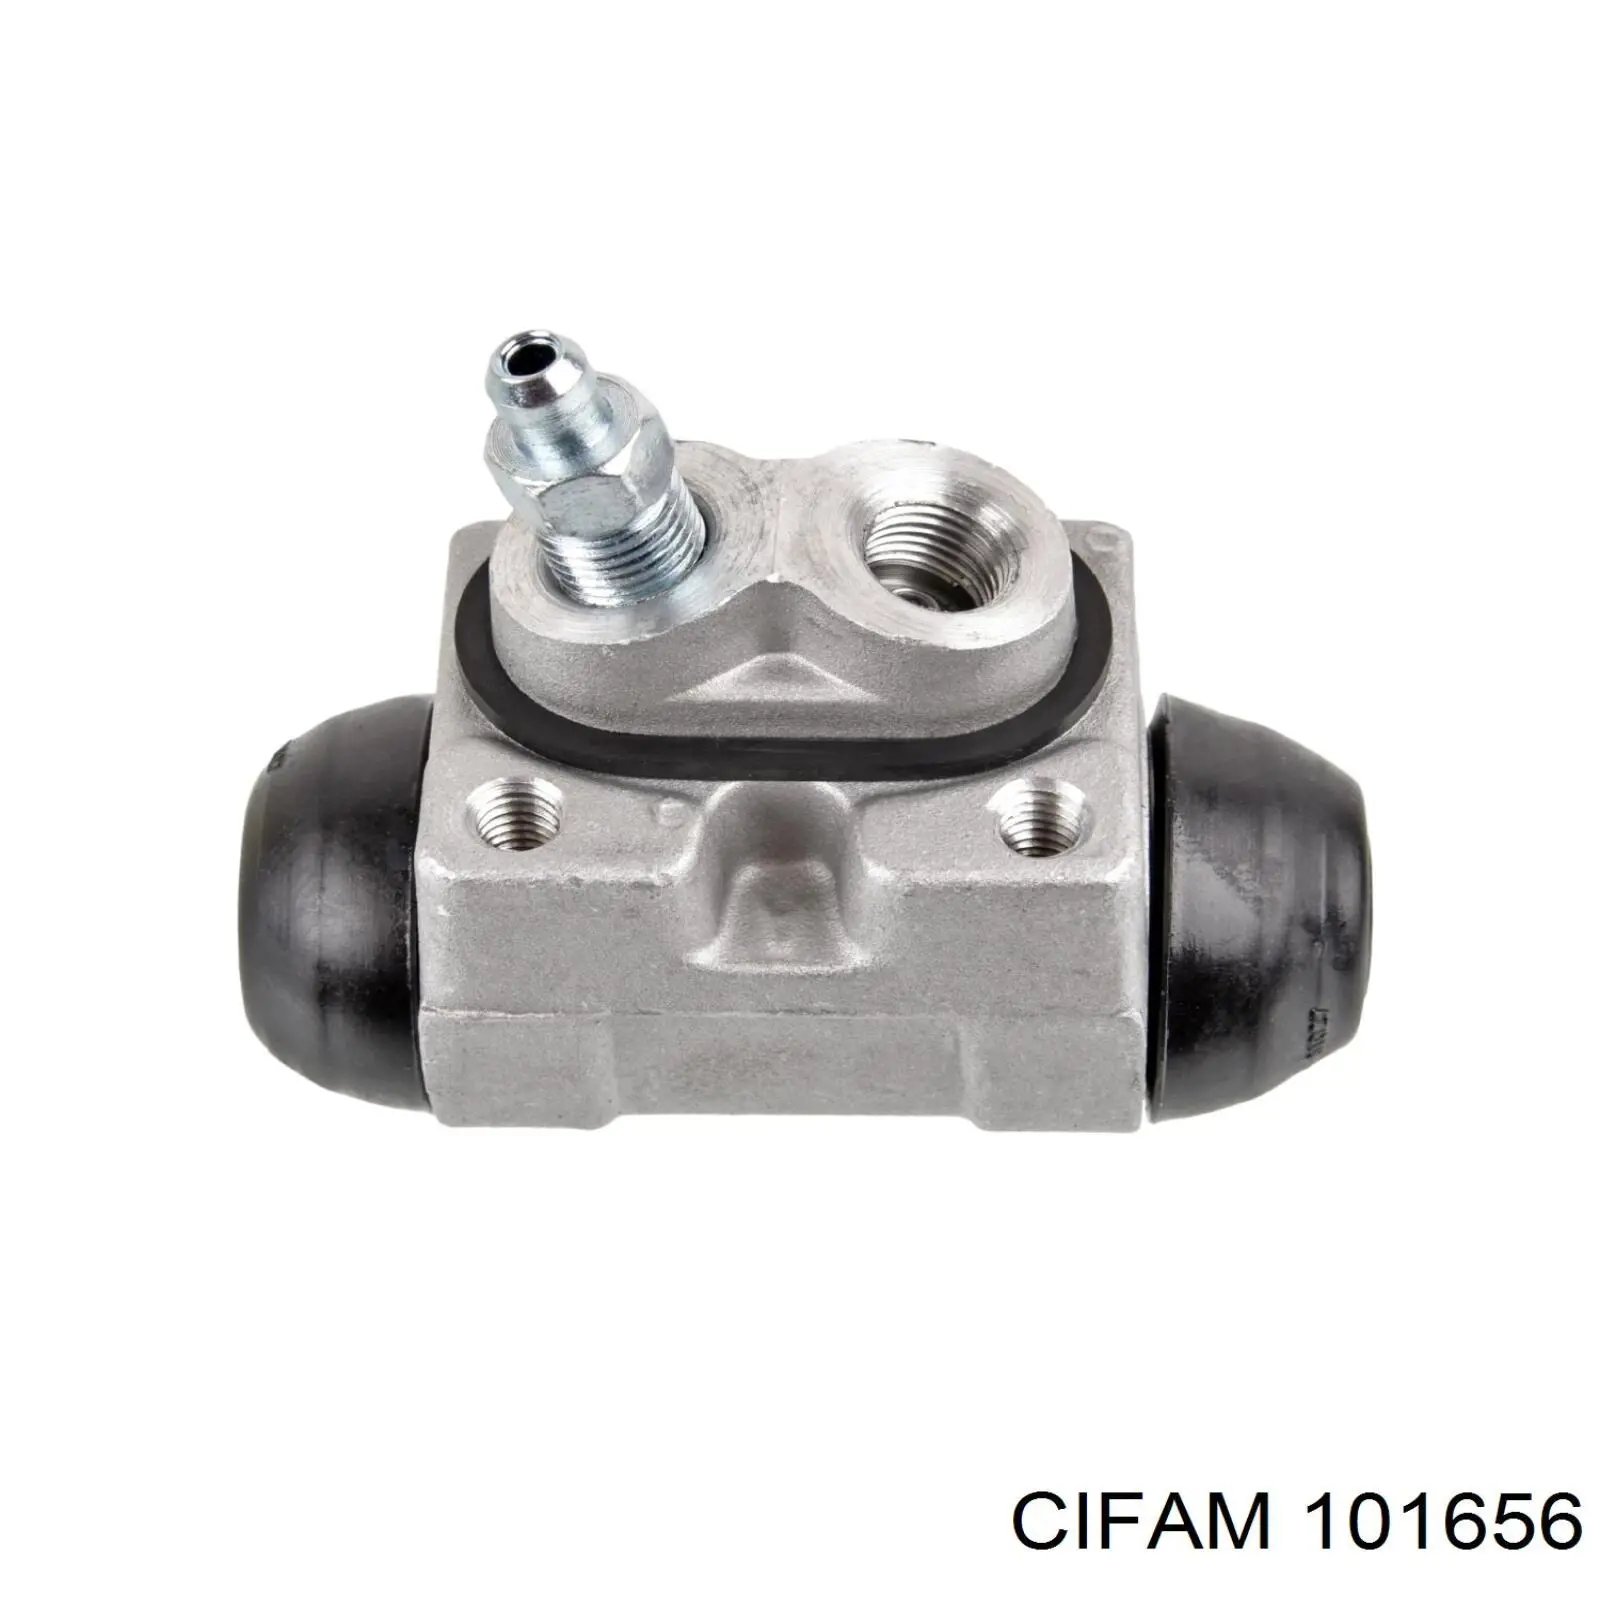 101656 Cifam цилиндр тормозной колесный рабочий задний